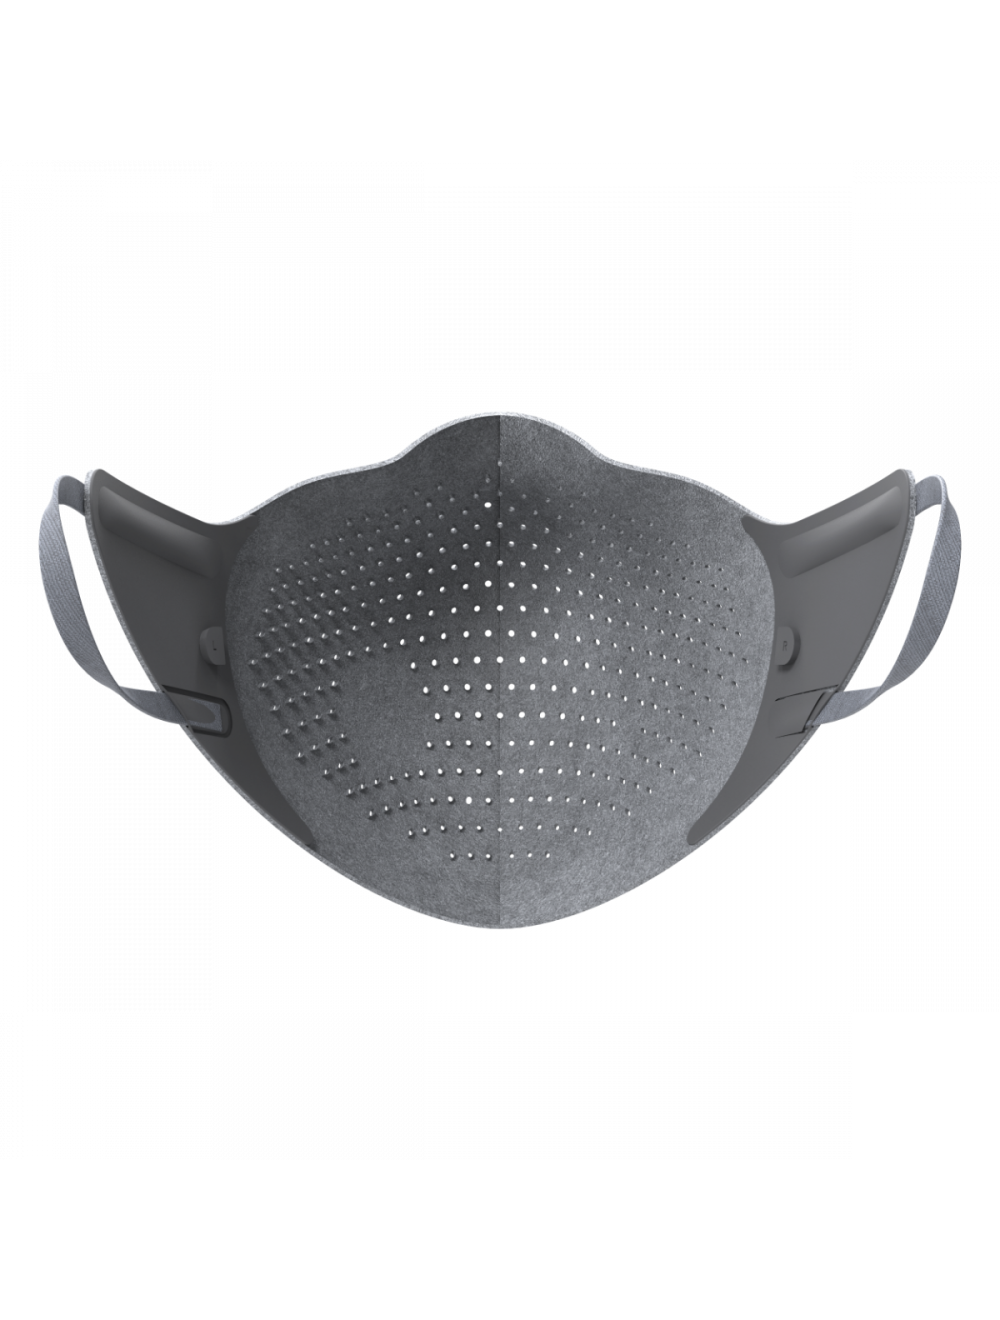 AirPop Original High-Performance Face Mask - Grey